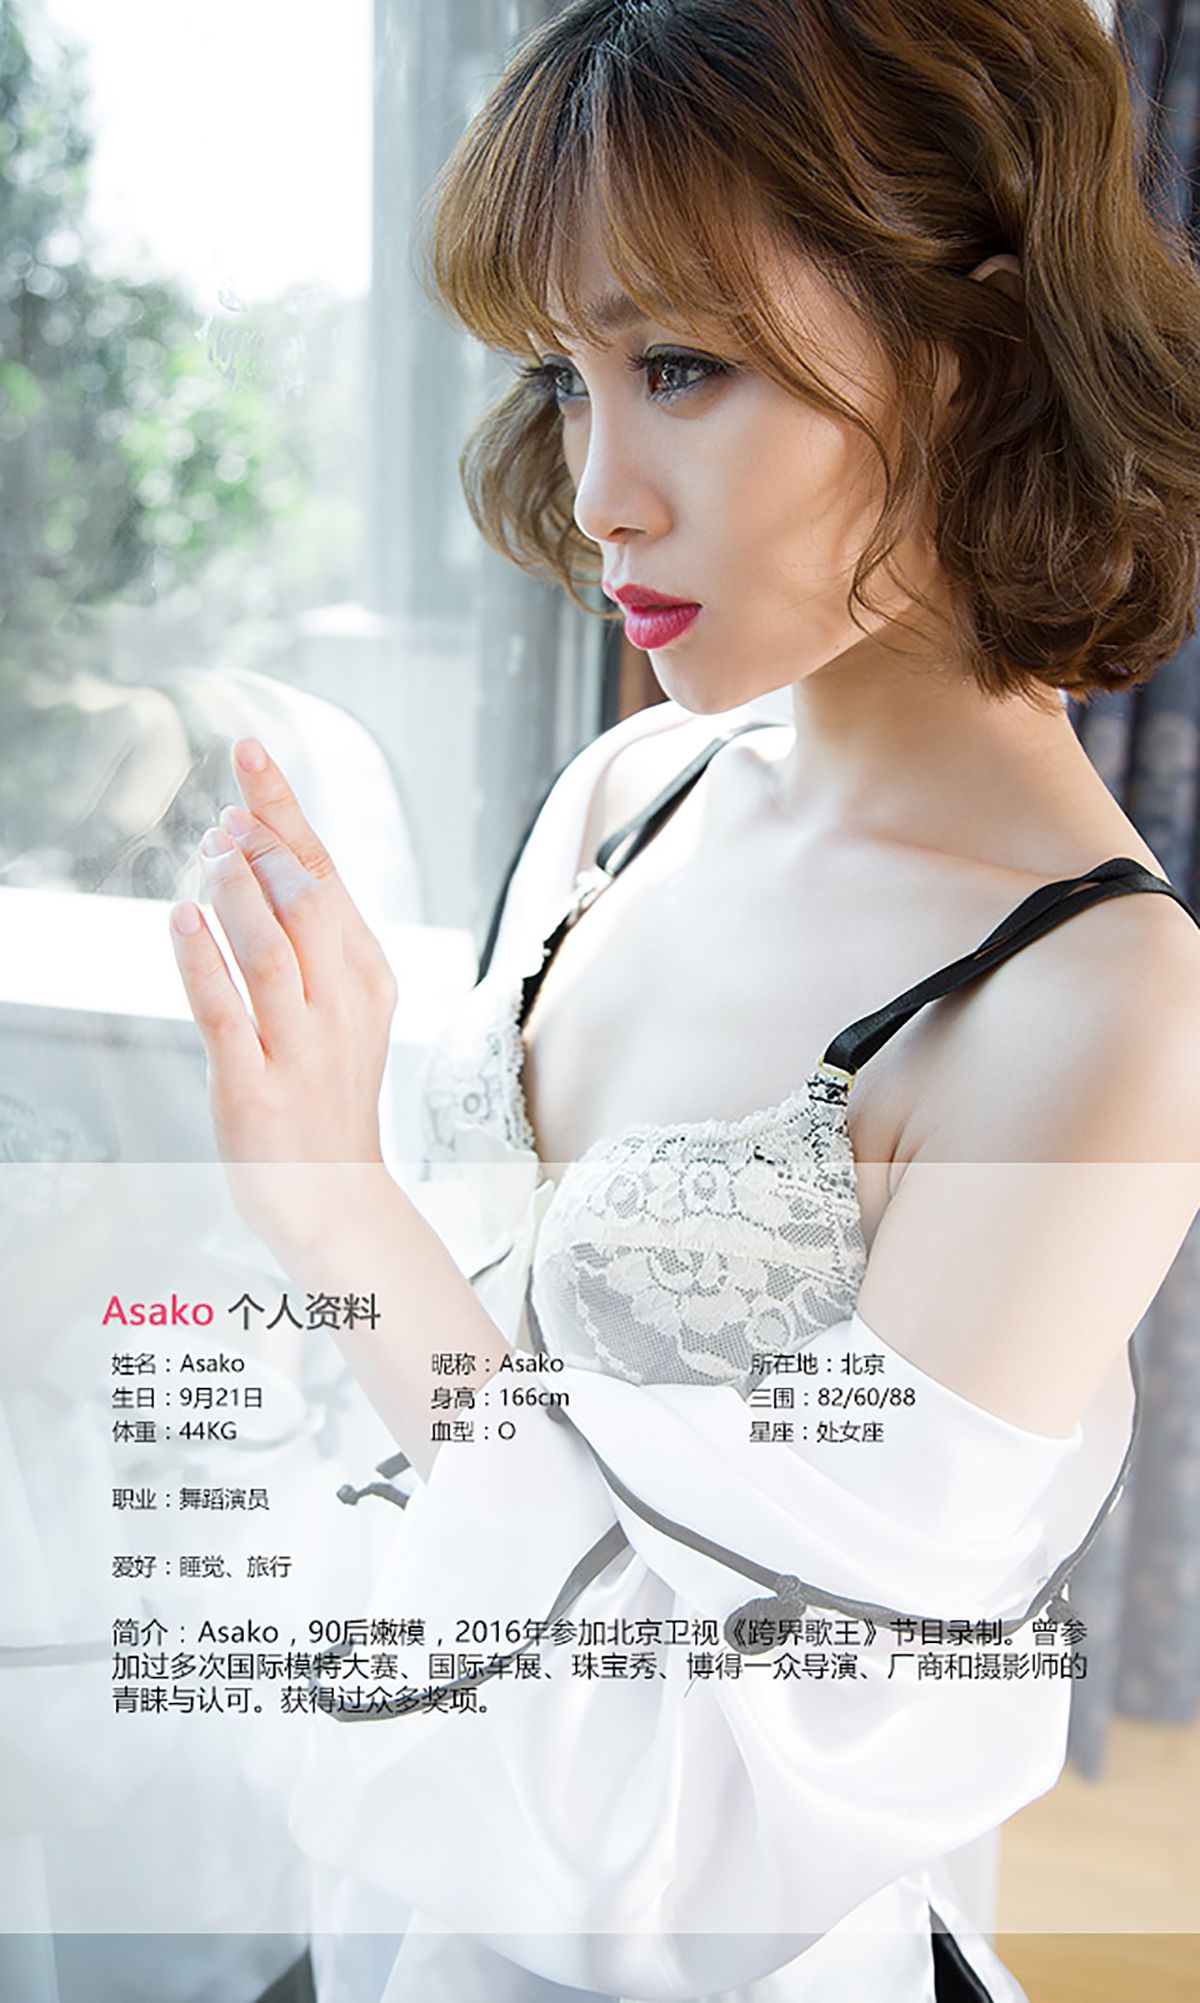 Asako Tao Xin Ji Aiyu Ugirls No.465